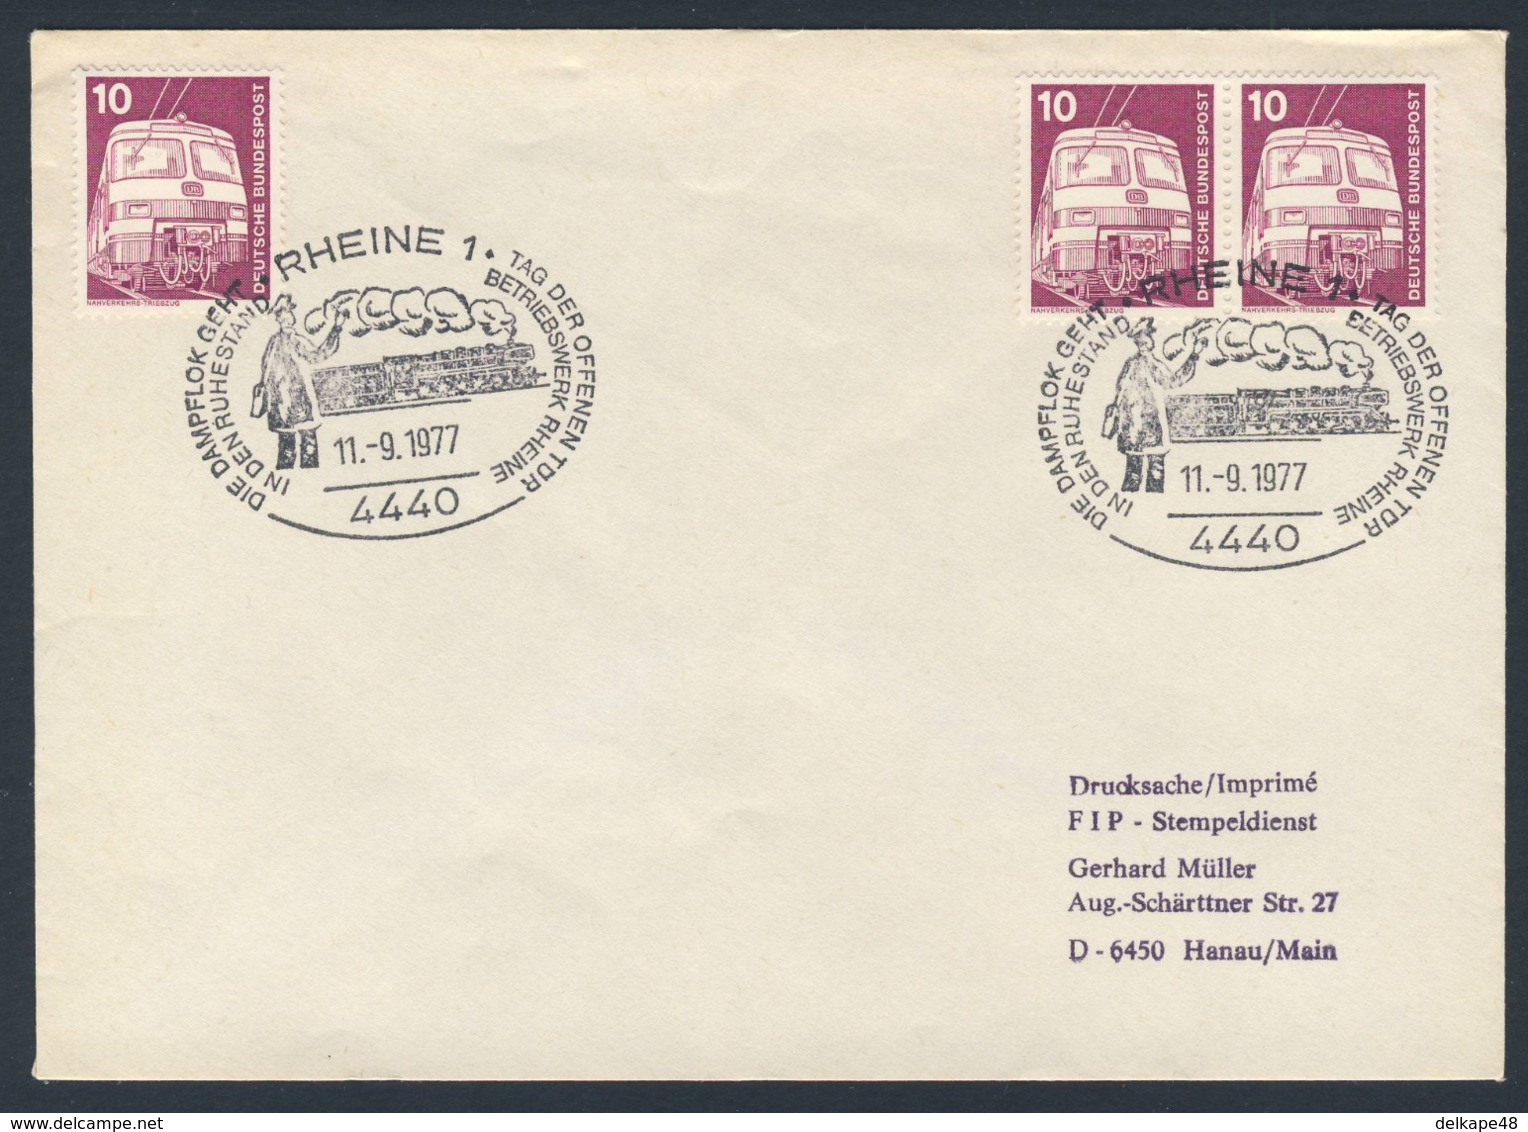 Deutschland Germany 1977 Brief Cover - Dampflok Geht In Ruhestand - Betriebswerk Rheine - Treinen